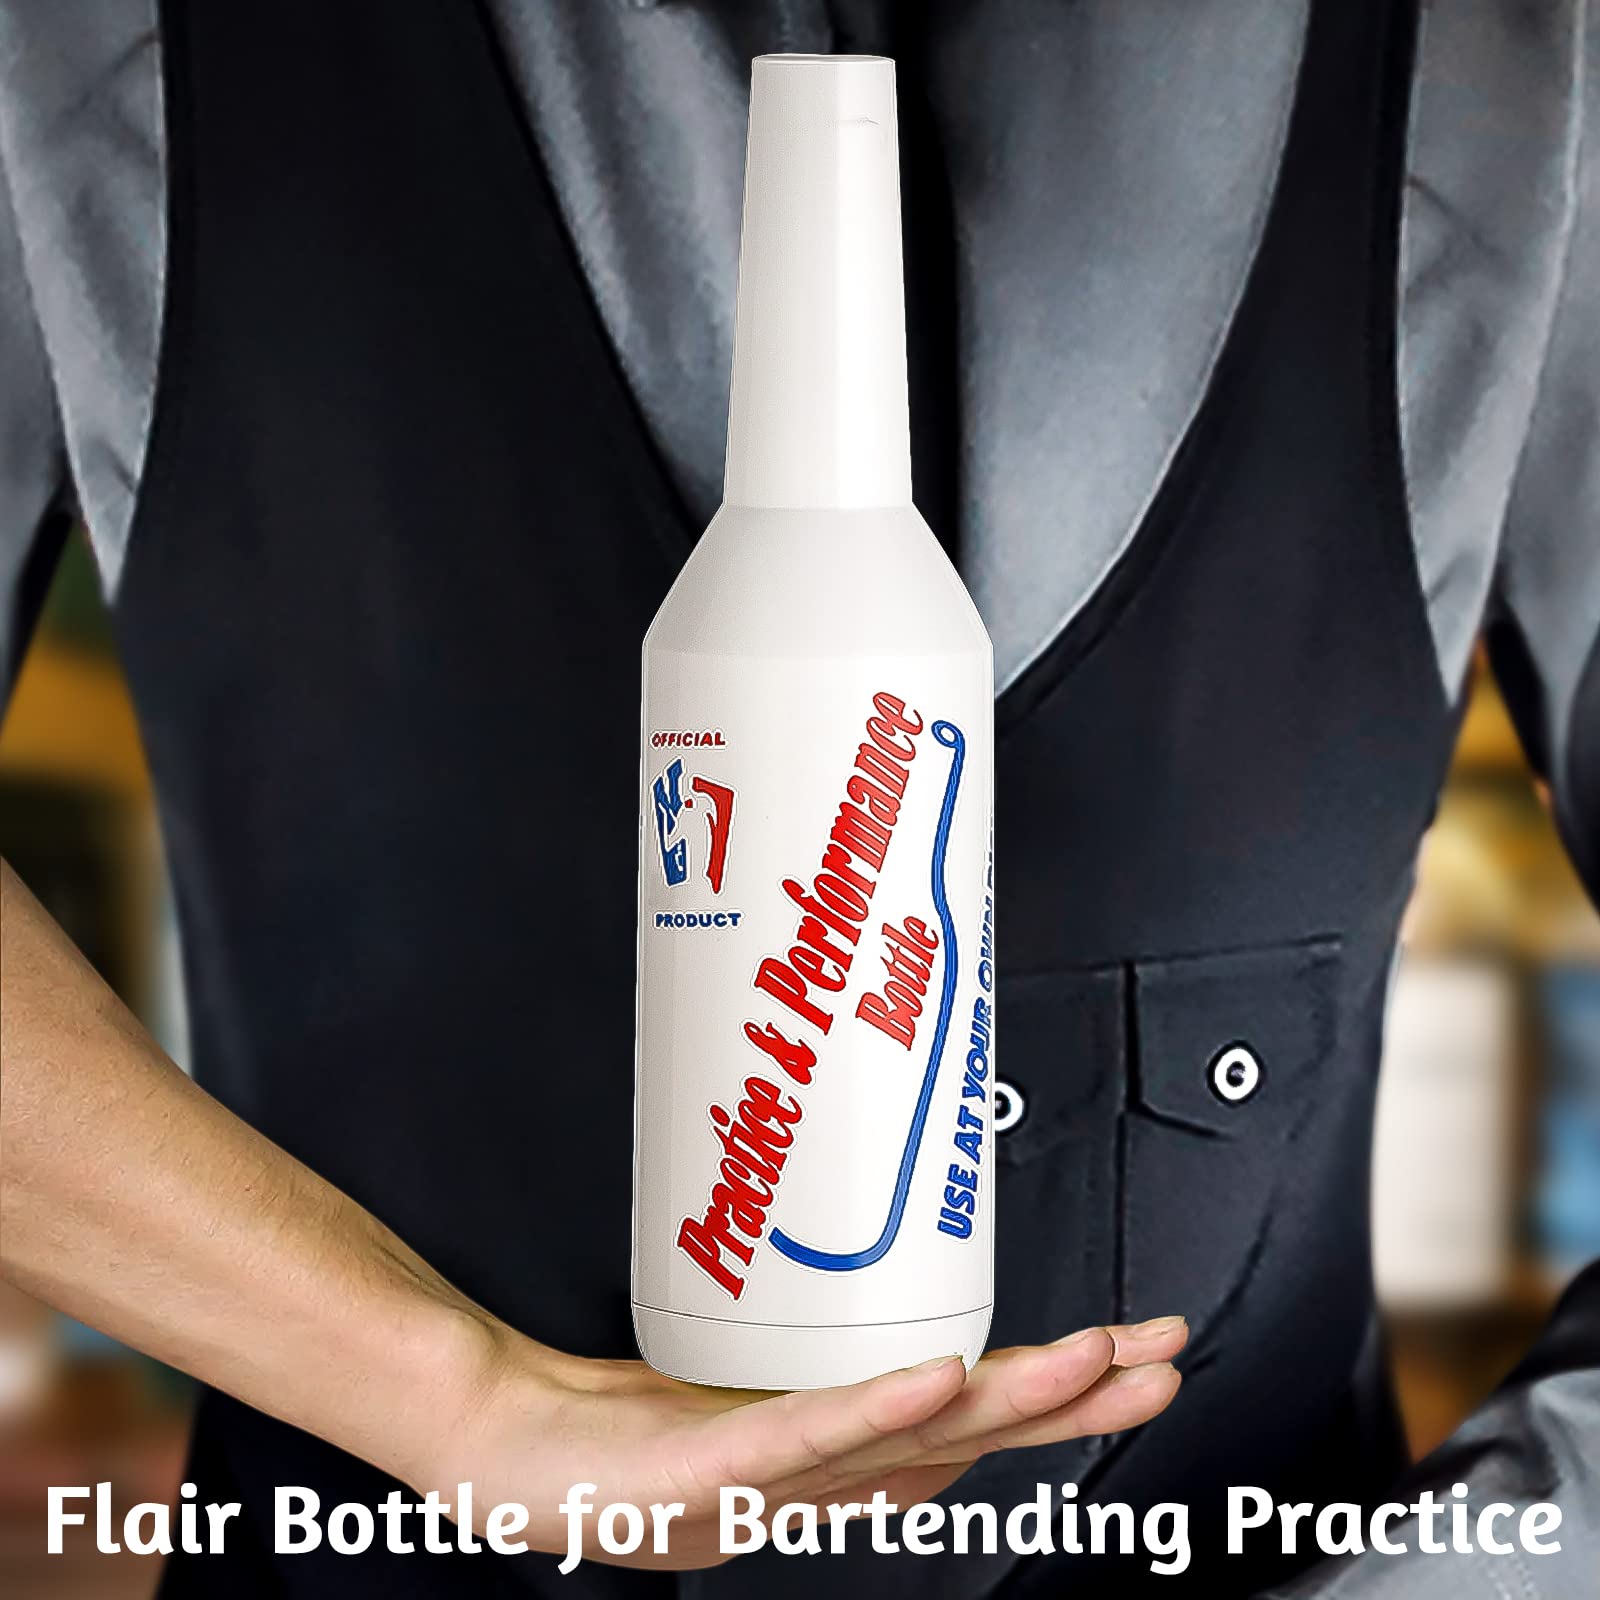 1pcs Flair Bottle Practice Bartender Practice Bottles 25oz/750ml White Flair Bartending kit Performance Training Bar Liquor Bottles White Decorative Bottles for Bar Pub Wine Cocktail Shaker